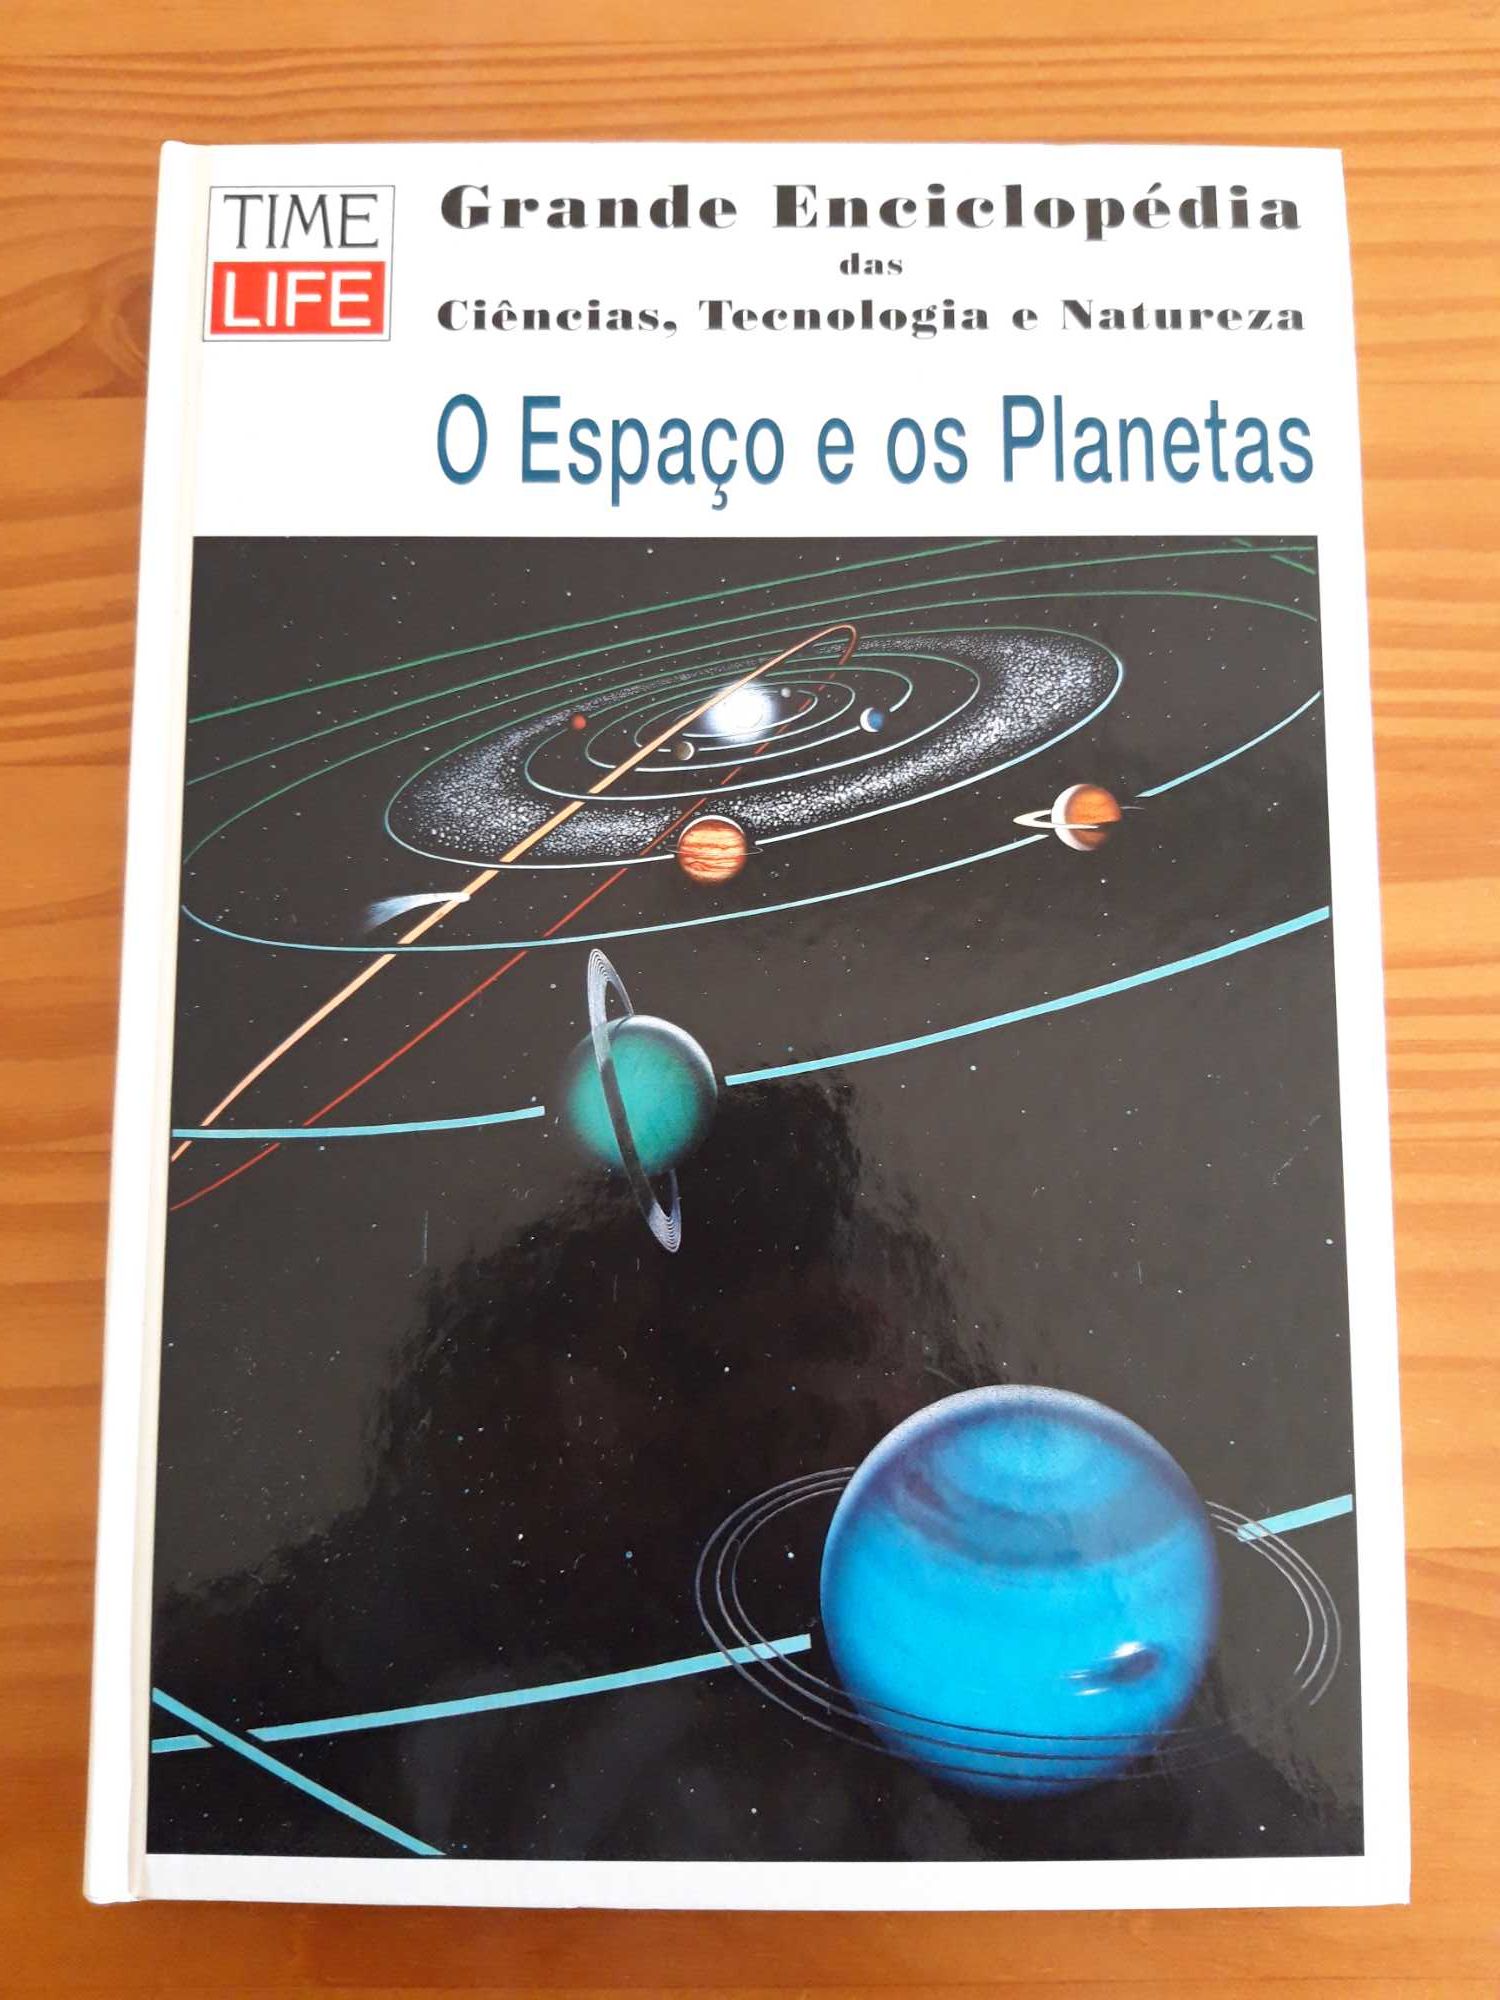 Livro "O Espaço e os Planetas"